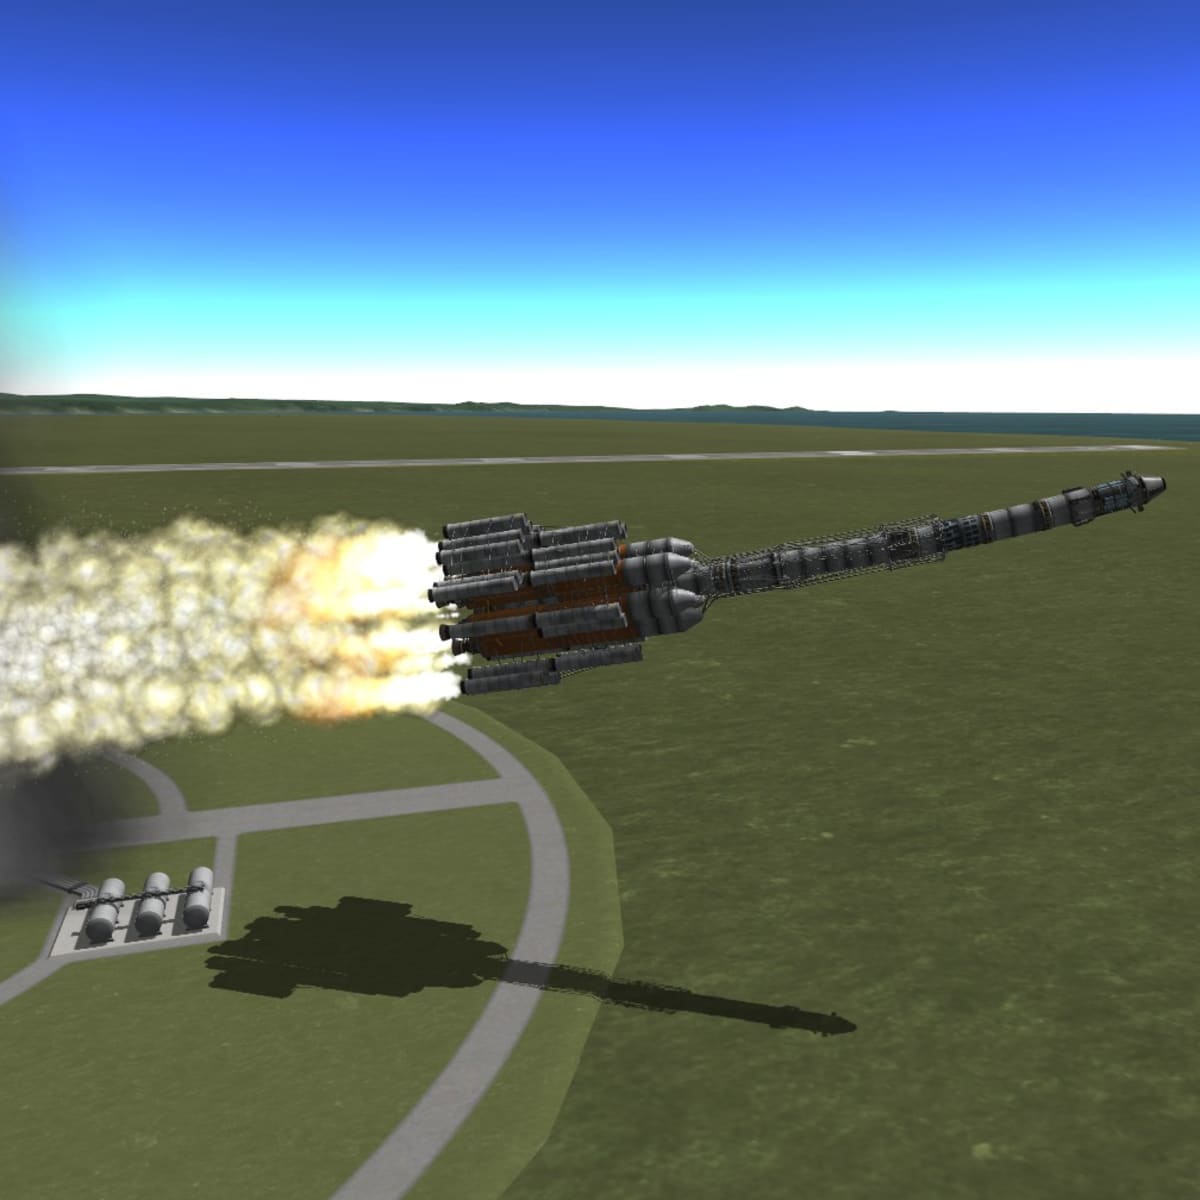 kerbal space program explosion